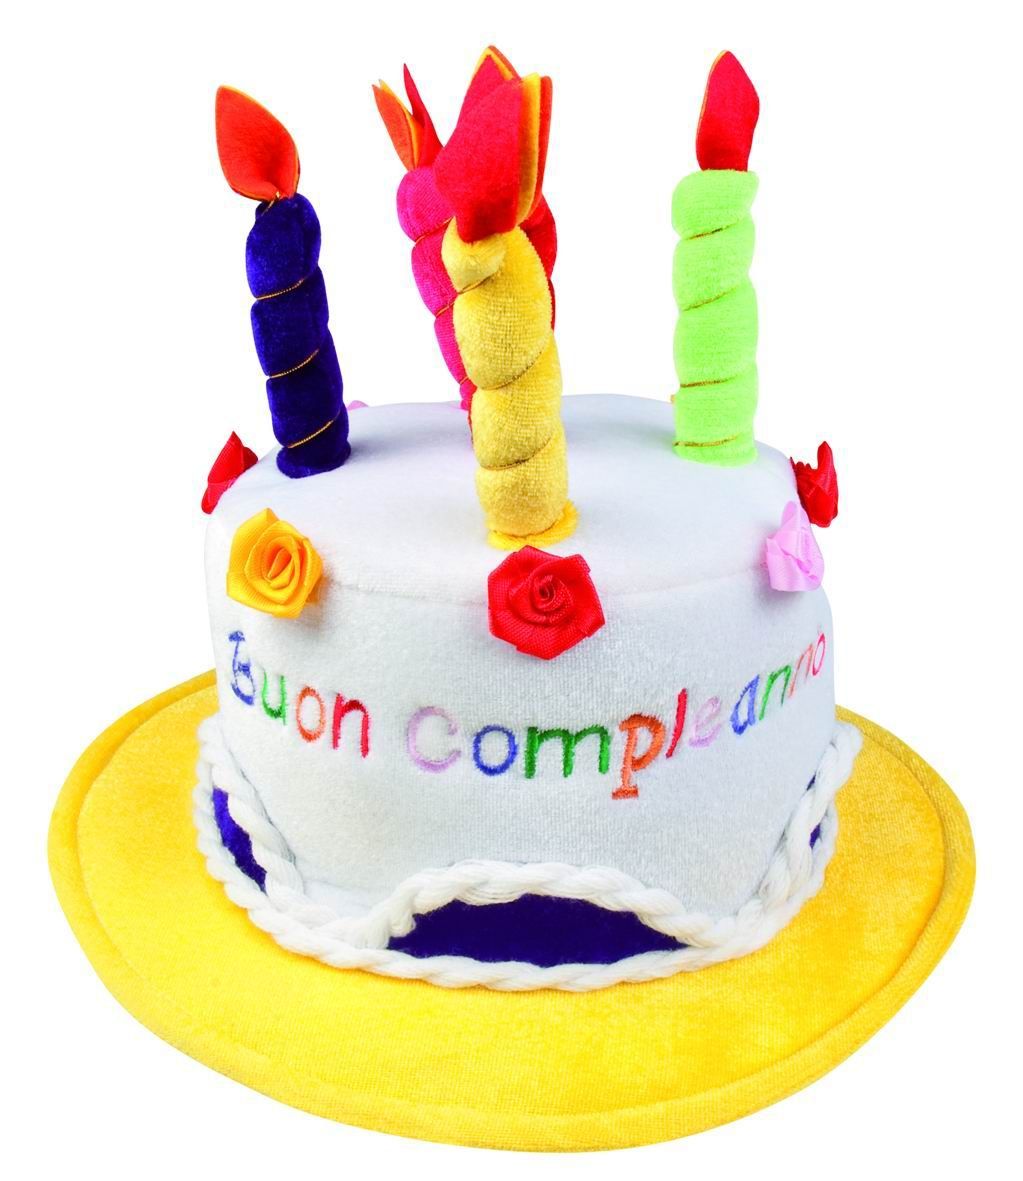 Cappello a forma di Torta con candeline Habby Birthday per compleanno